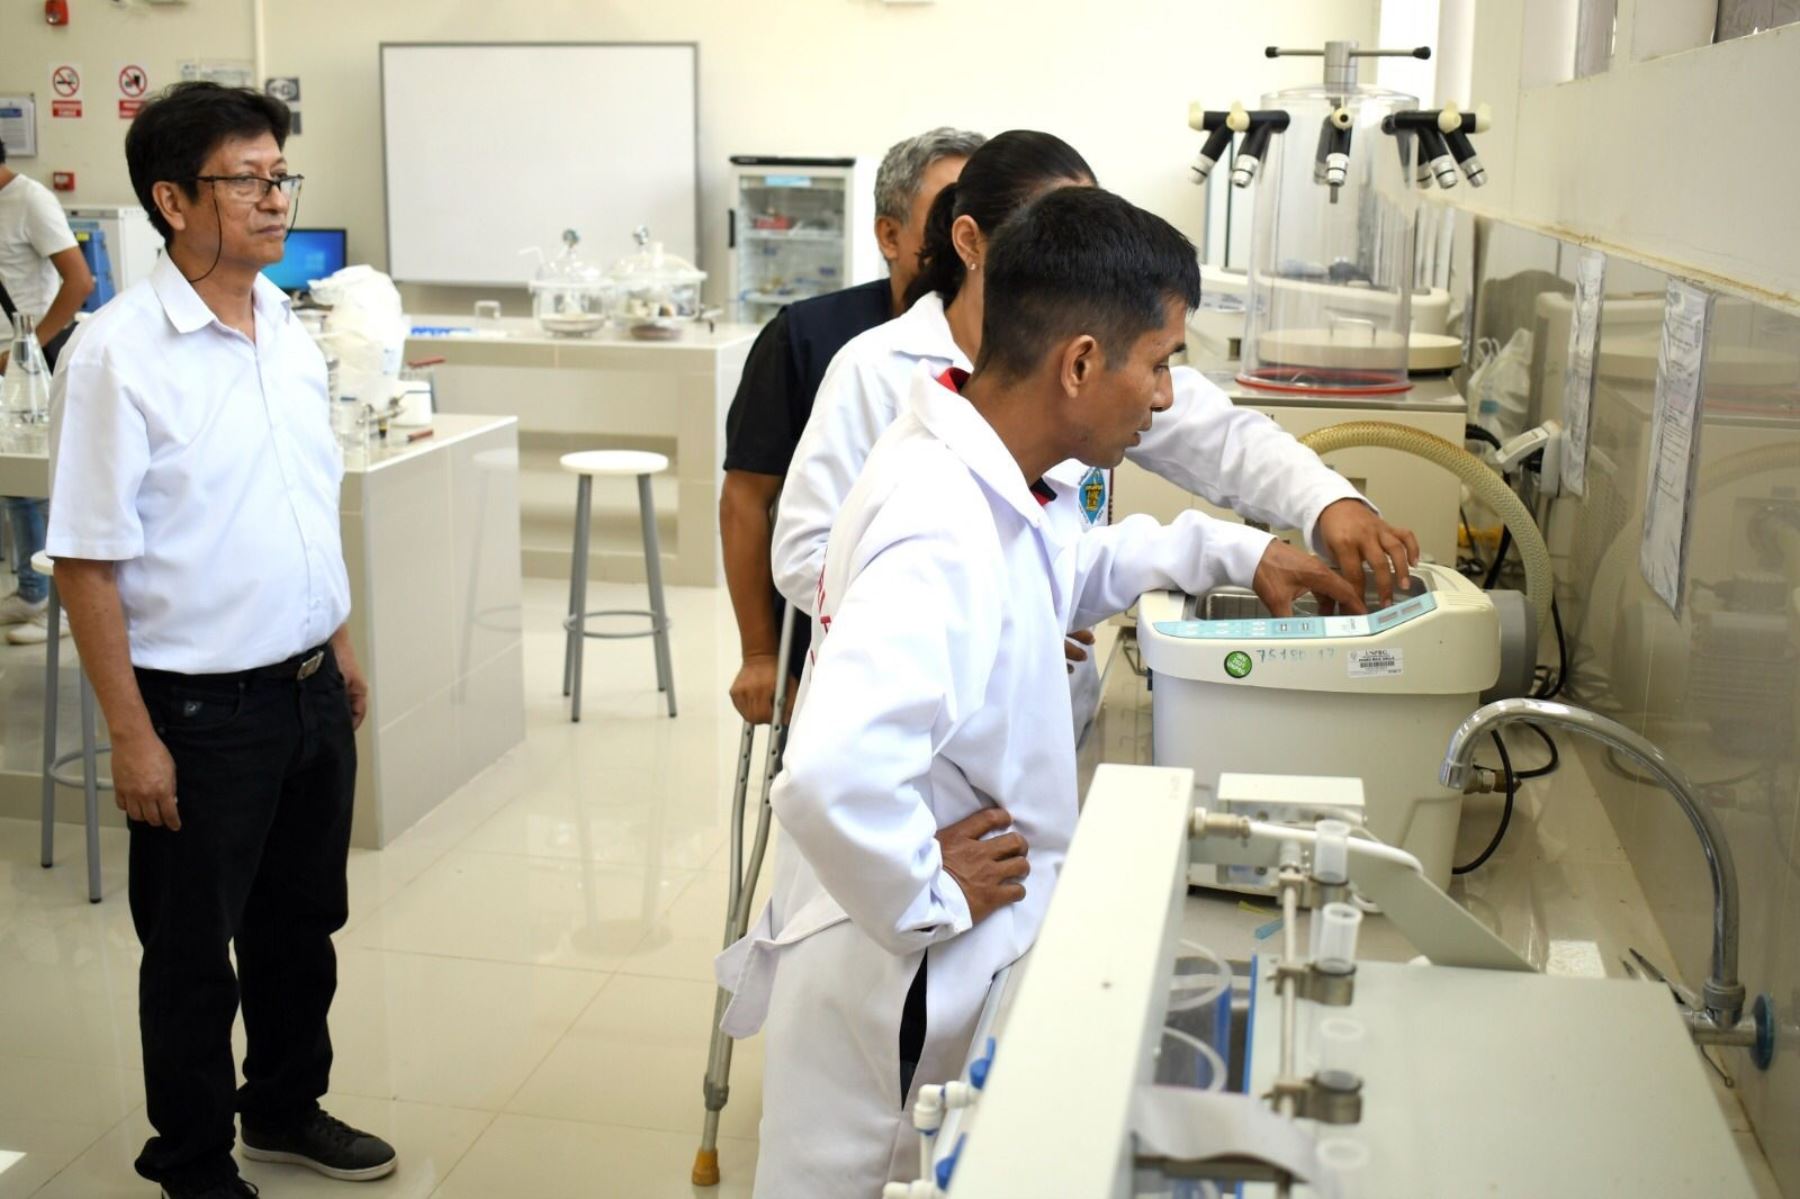 En los laboratorios de la Facultad de Ingeniería Química de la Universidad Pedro Ruiz Gallo se producen repelentes contra la picadura de zancudos.